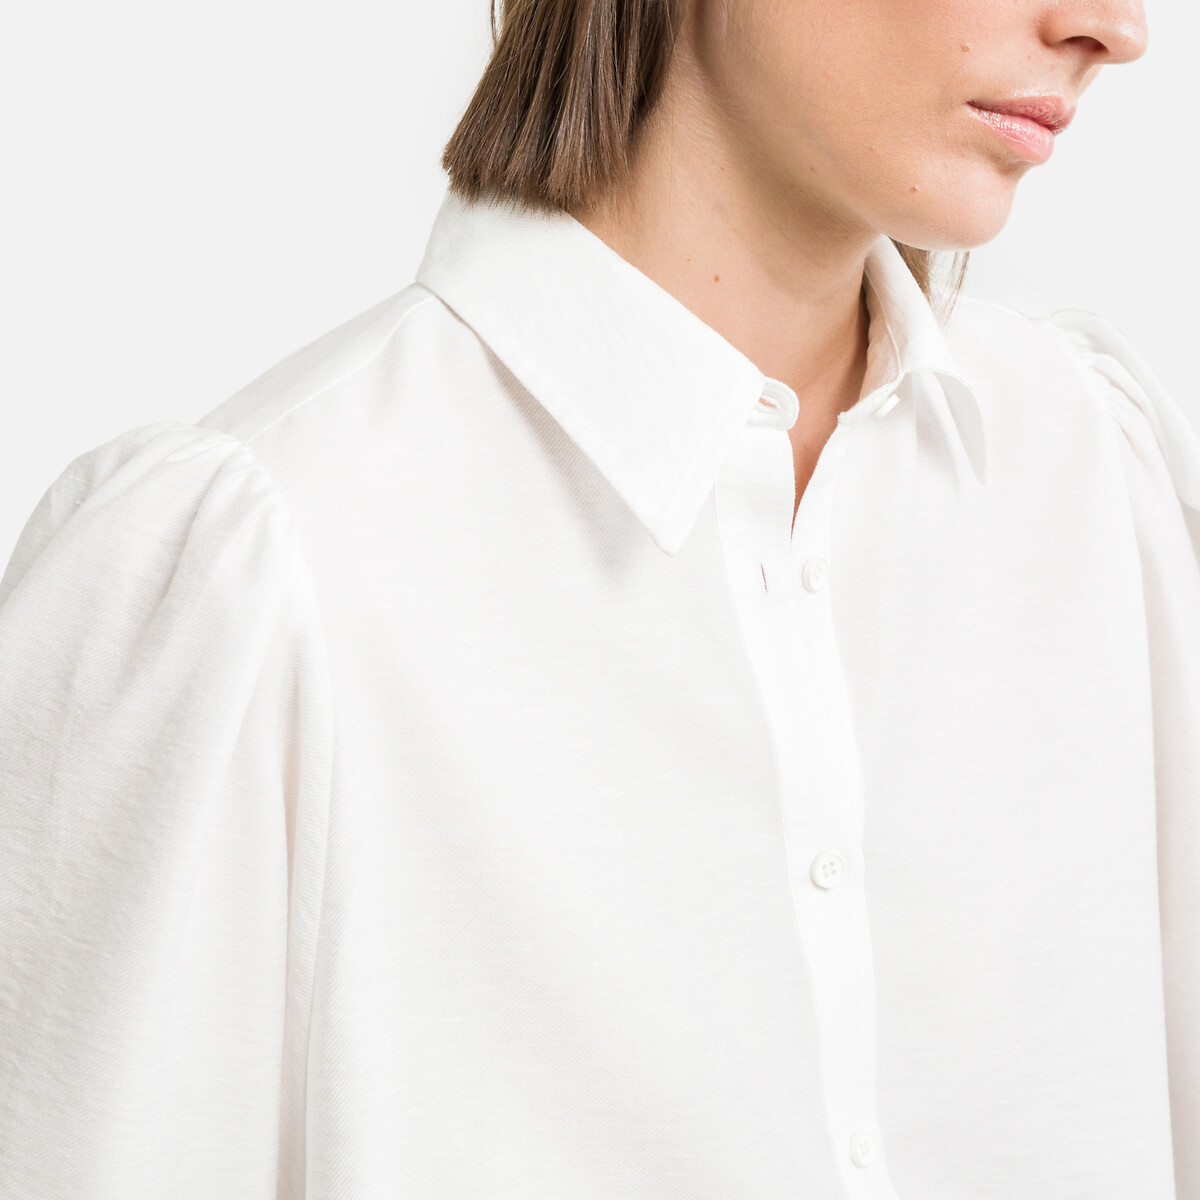 Рубашка Однотонная с длинными рукавами 0(XS) белый LaRedoute, размер 0(XS) Рубашка Однотонная с длинными рукавами 0(XS) белый - фото 3